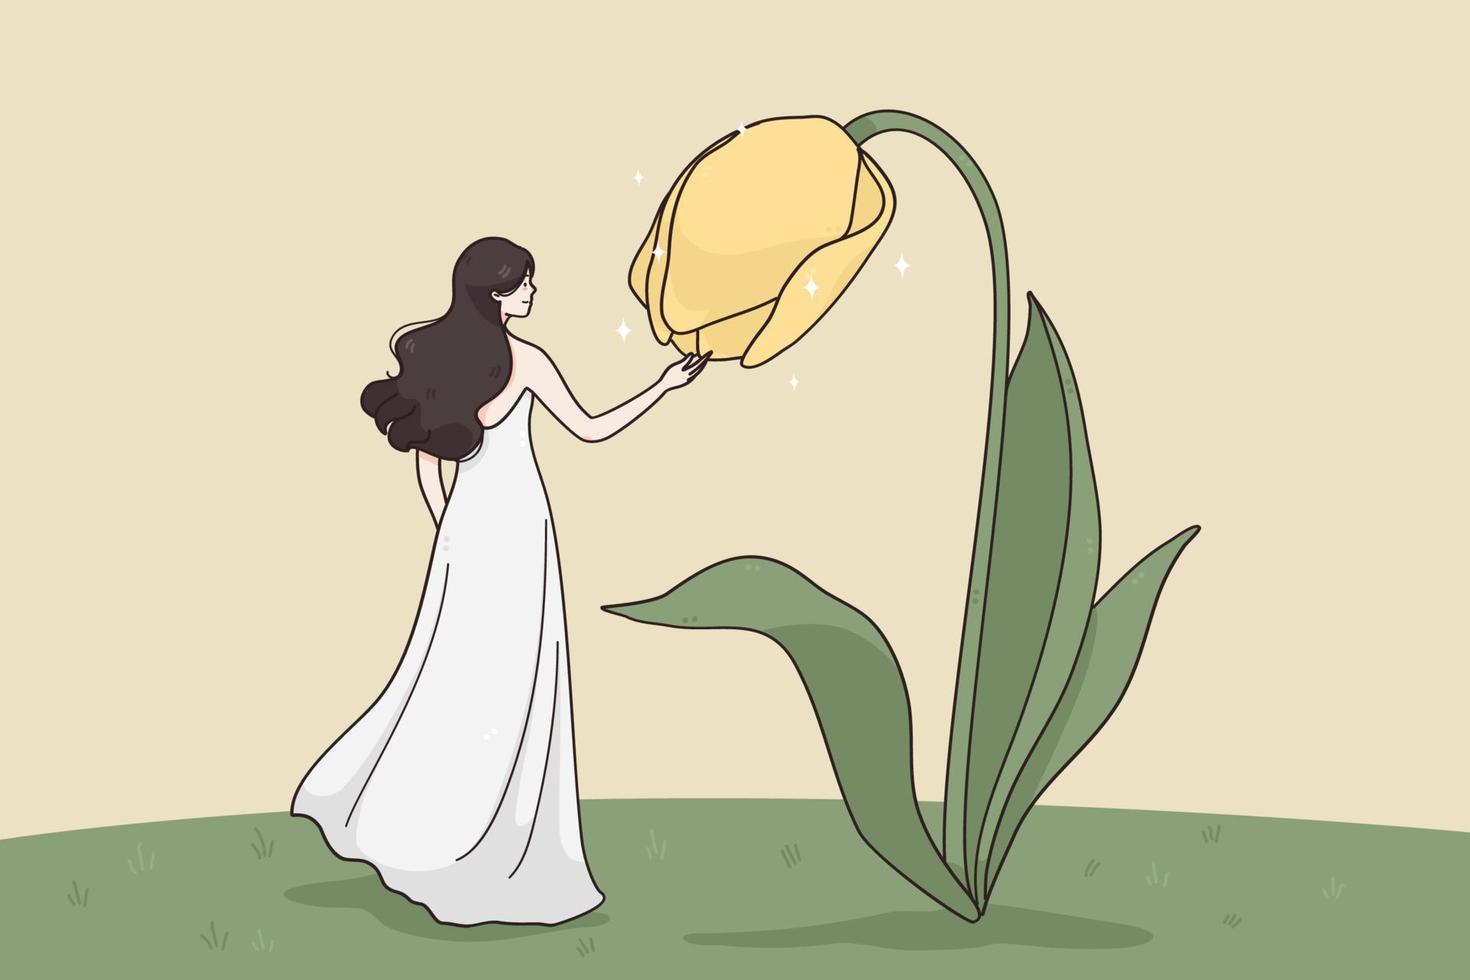 natureza, beleza, conceito de ternura. encontro surreal de uma jovem bonita em um personagem de desenho animado de vestido longo em pé e tocando uma flor gigante amarela desabrochando no jardim ilustração do vetor